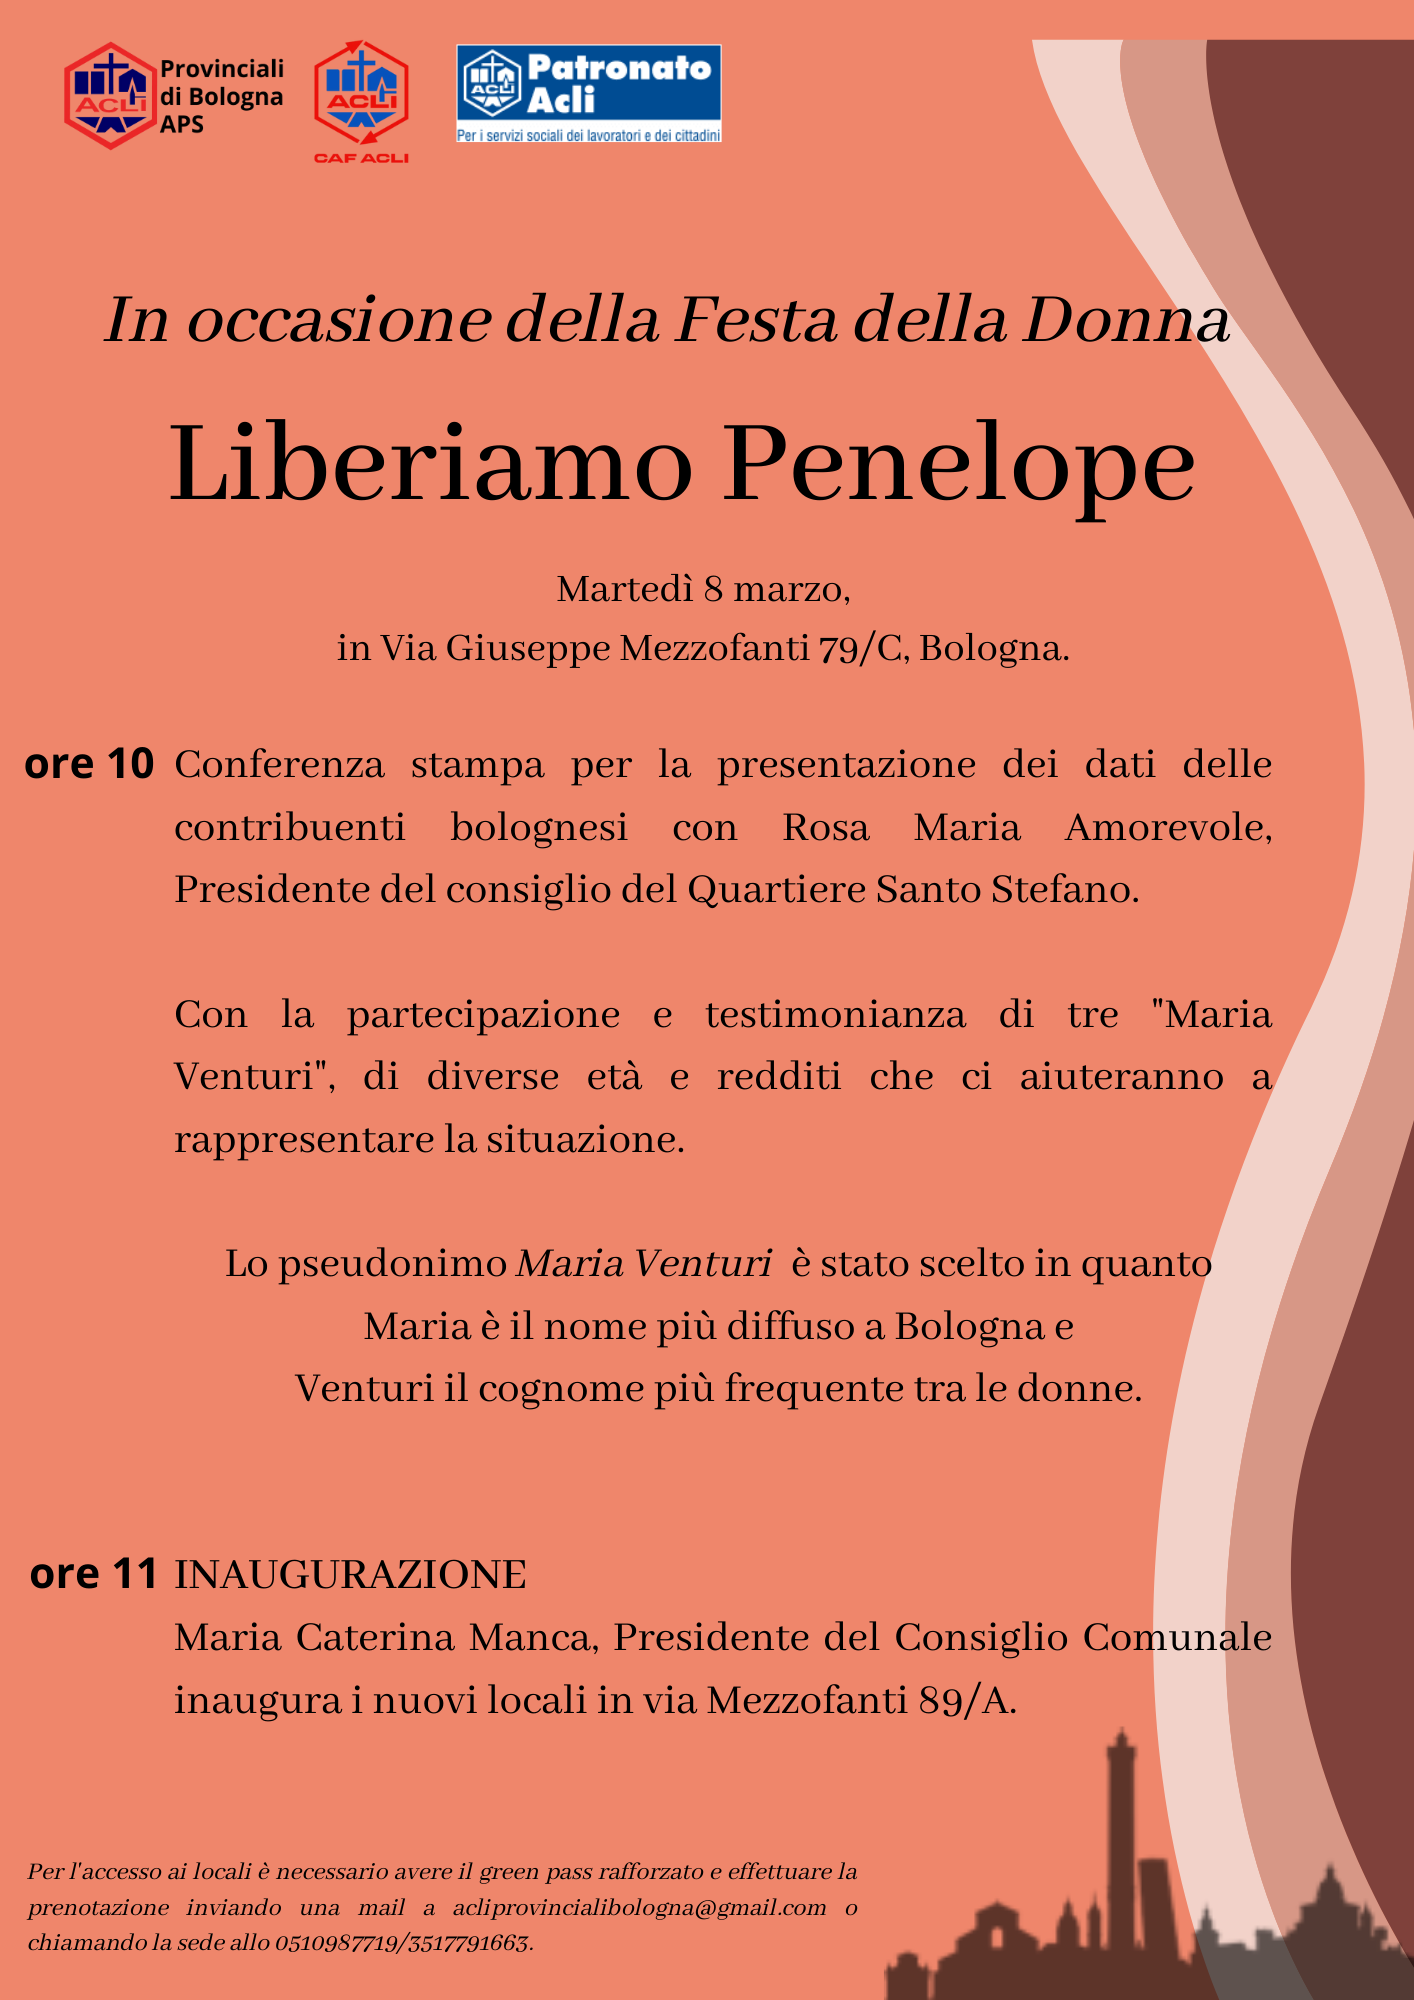 Inaugurazione 8 marzo_Acli Provinciali di Bologna